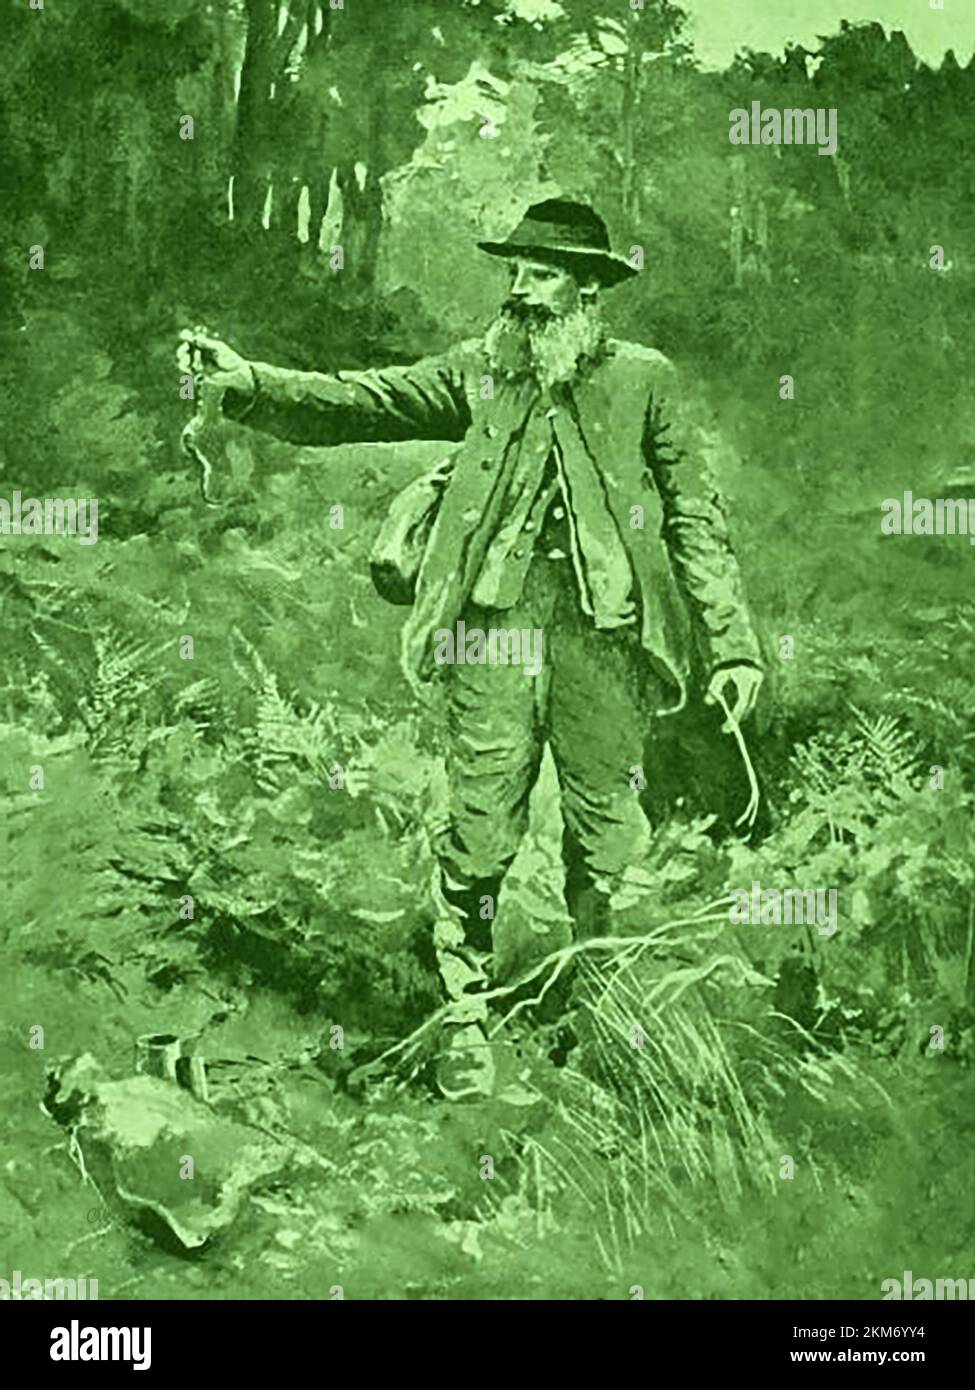 Harry „Brusher“ Mills (1840-1905), ein alter Schlangenfänger im New Forest, Hampshire, Großbritannien. . Harry lebte als Einsiedler im Wald, wurde aber zu einem Berühmtheiten, der Besucher und Künstler zu seinem Haus in einer Holzkohlebrennerhütte im Sporelake Lawn bei Brockenhurst zog. Er verdiente seinen Lebensunterhalt damit, Schlangen-Öl-Salben und Medikamente zu verkaufen, Schlangenskelette an Touristen zu verkaufen und Schlangen als Futter für Zootiere zu liefern. Sein Spitzname „Brusher“ rührte daher, dass er damit beschäftigt war, den lokalen Cricketplatz zwischen den Spielen zu putzen. Stockfoto